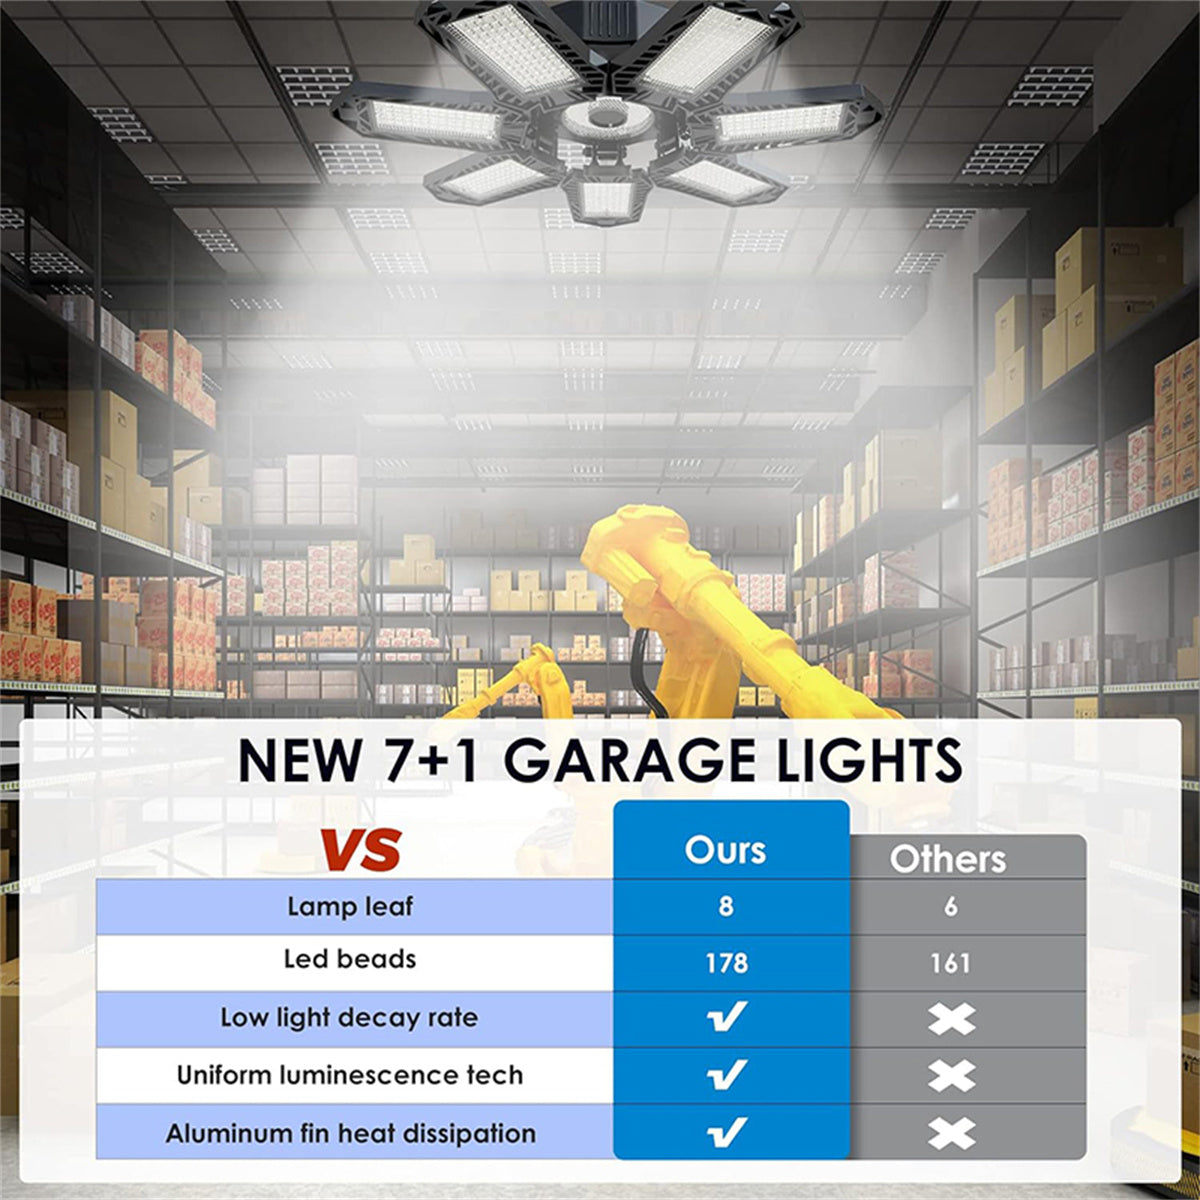 18500LM 6500K LED Garage Lights Ceiling Light with 7 Adjustable Panels Ultra Bright Deformable LED Shop Light for Garage Basement Workshop 220W , 2 Pack